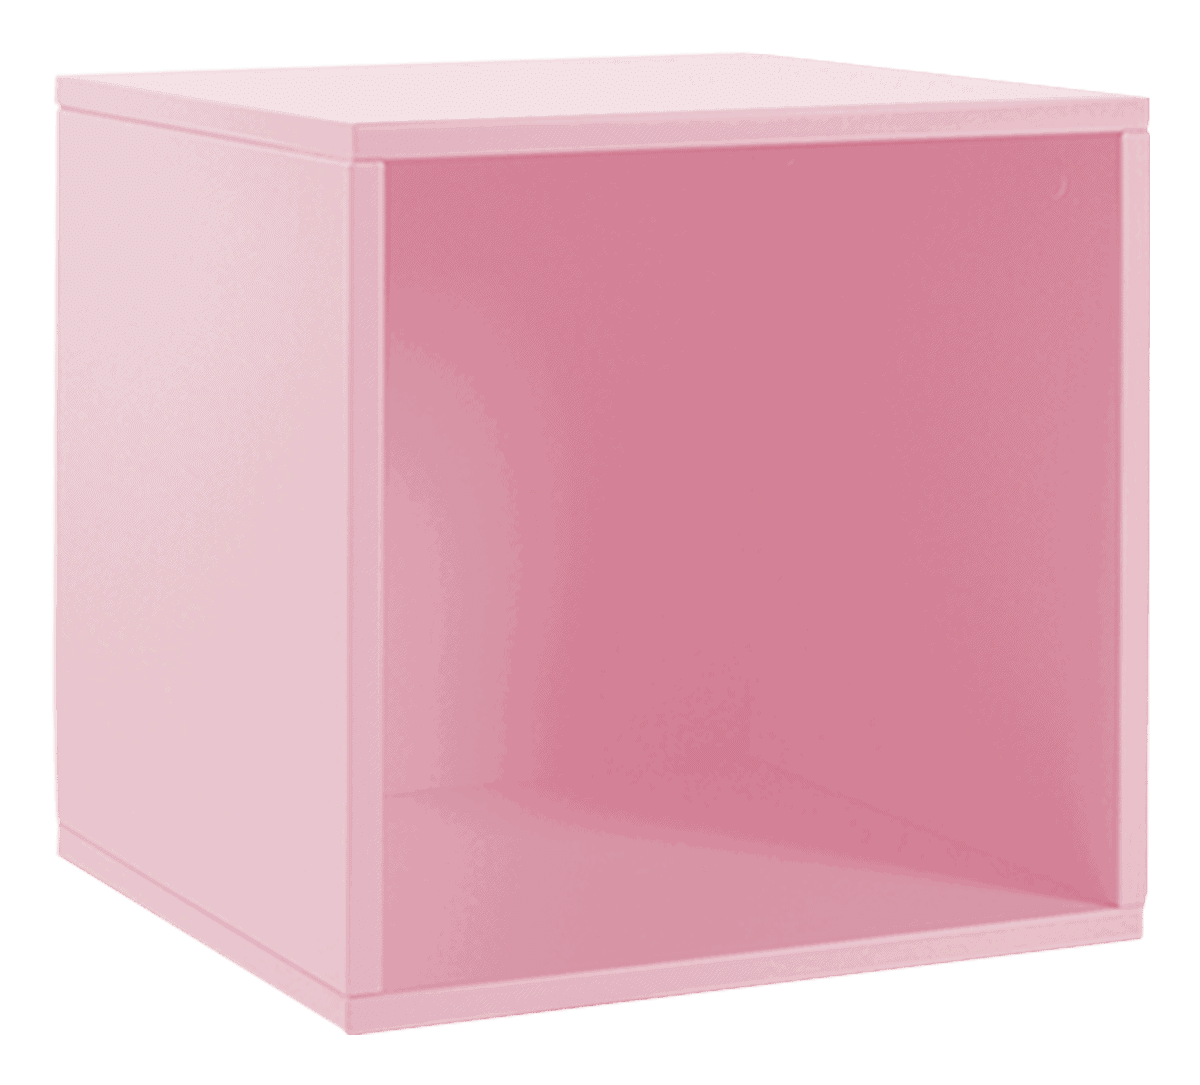 Modulo único estante nórdica rosa 3 deezign